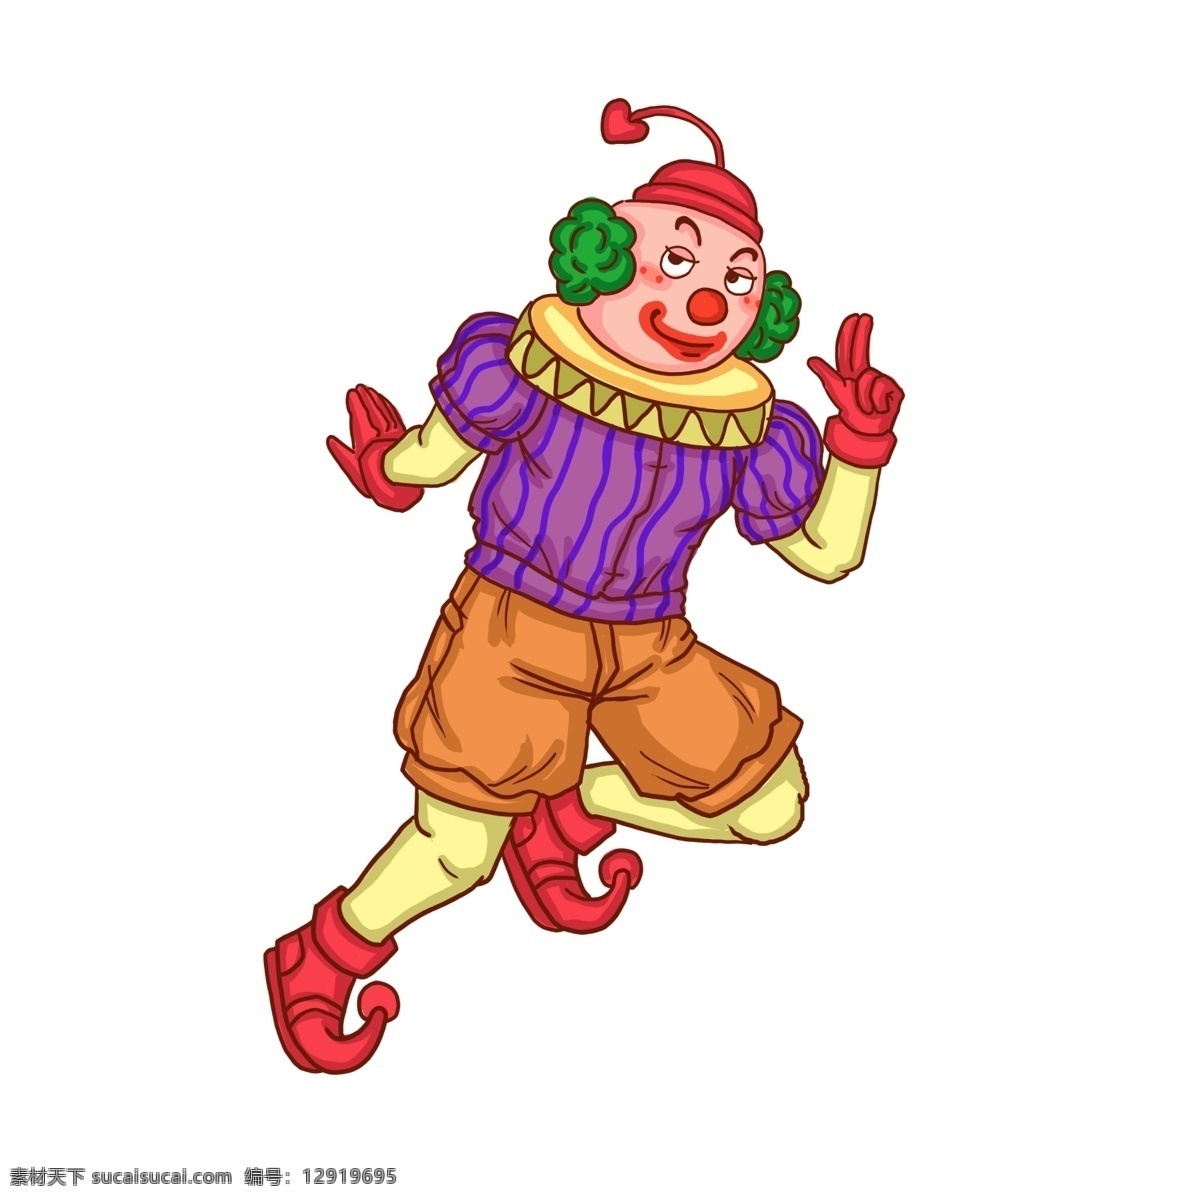 小丑 愚人节 手枪 卡通 人物 愚人节道具 男小丑 卡通人物 快乐小丑 黄色 红色 绿色 愚人节快乐